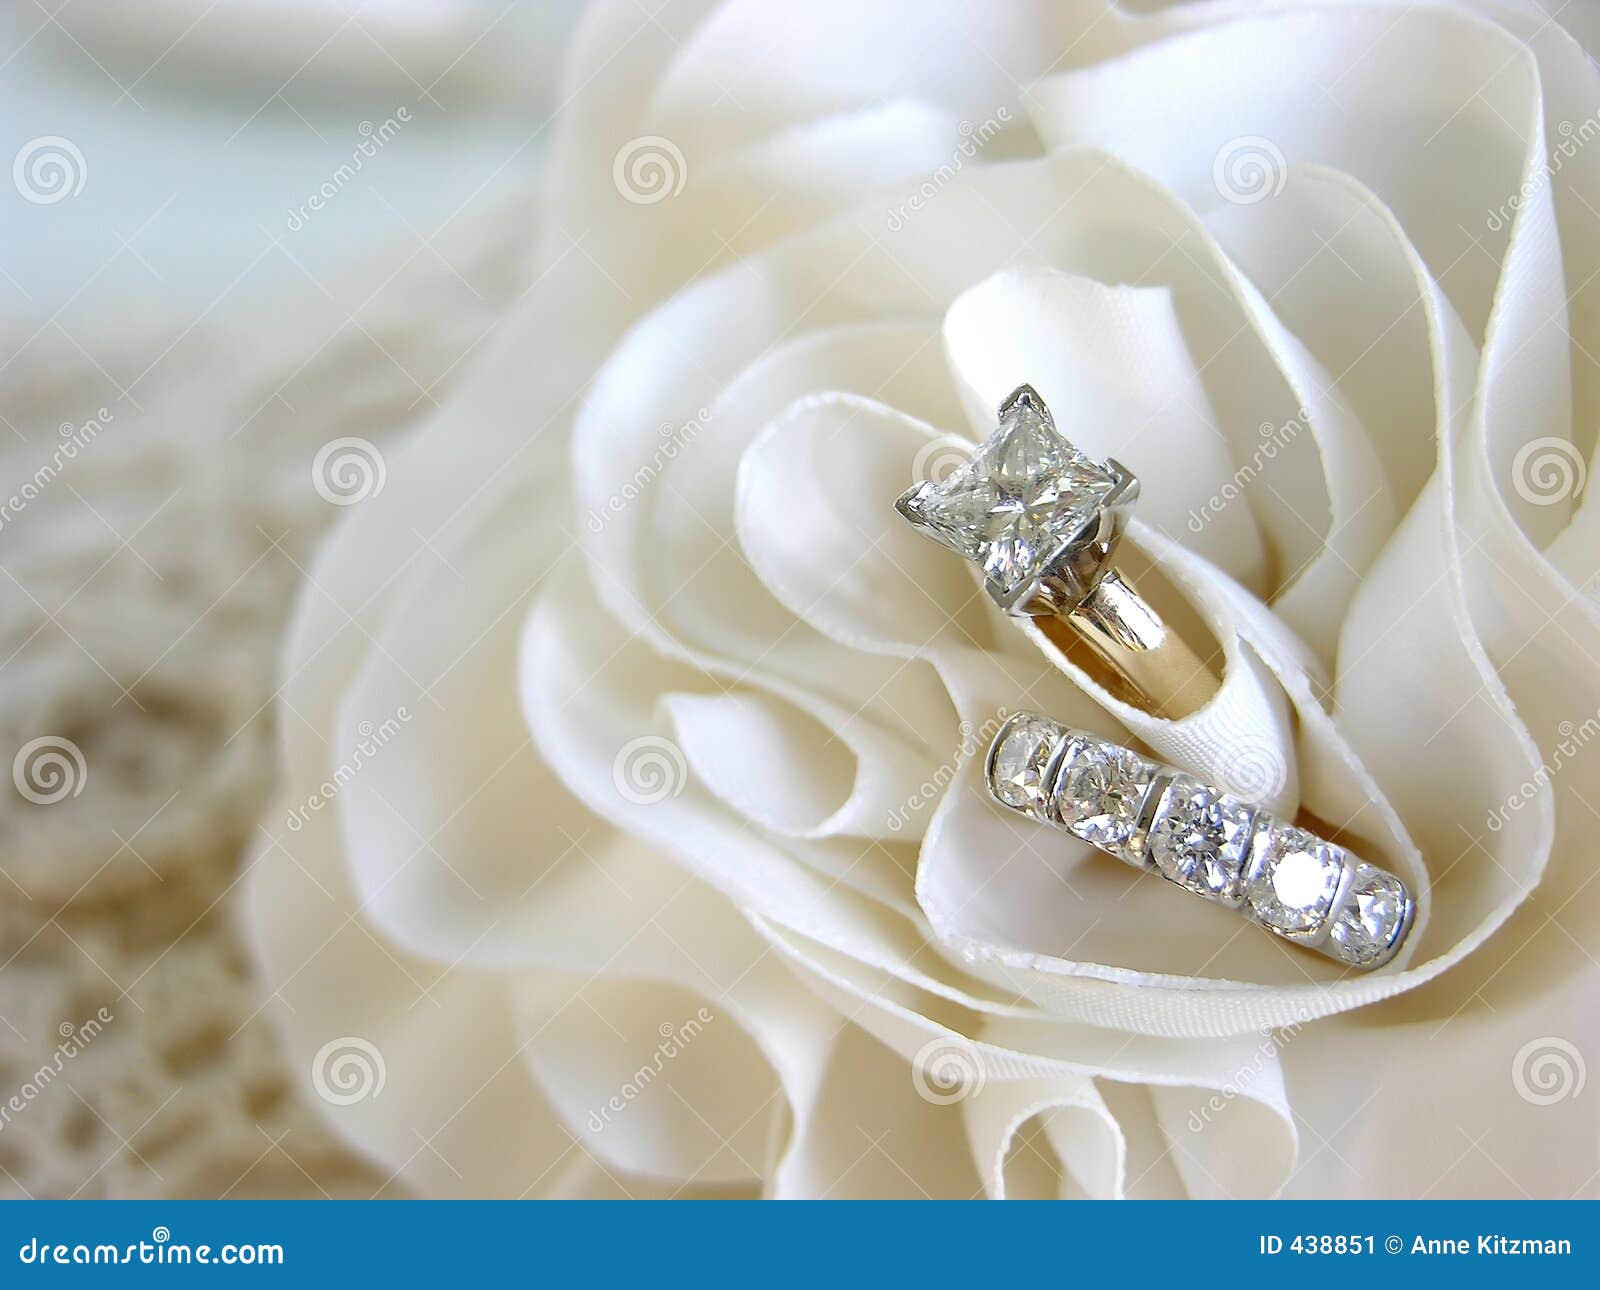 Stock Image: Wedding Ring Background